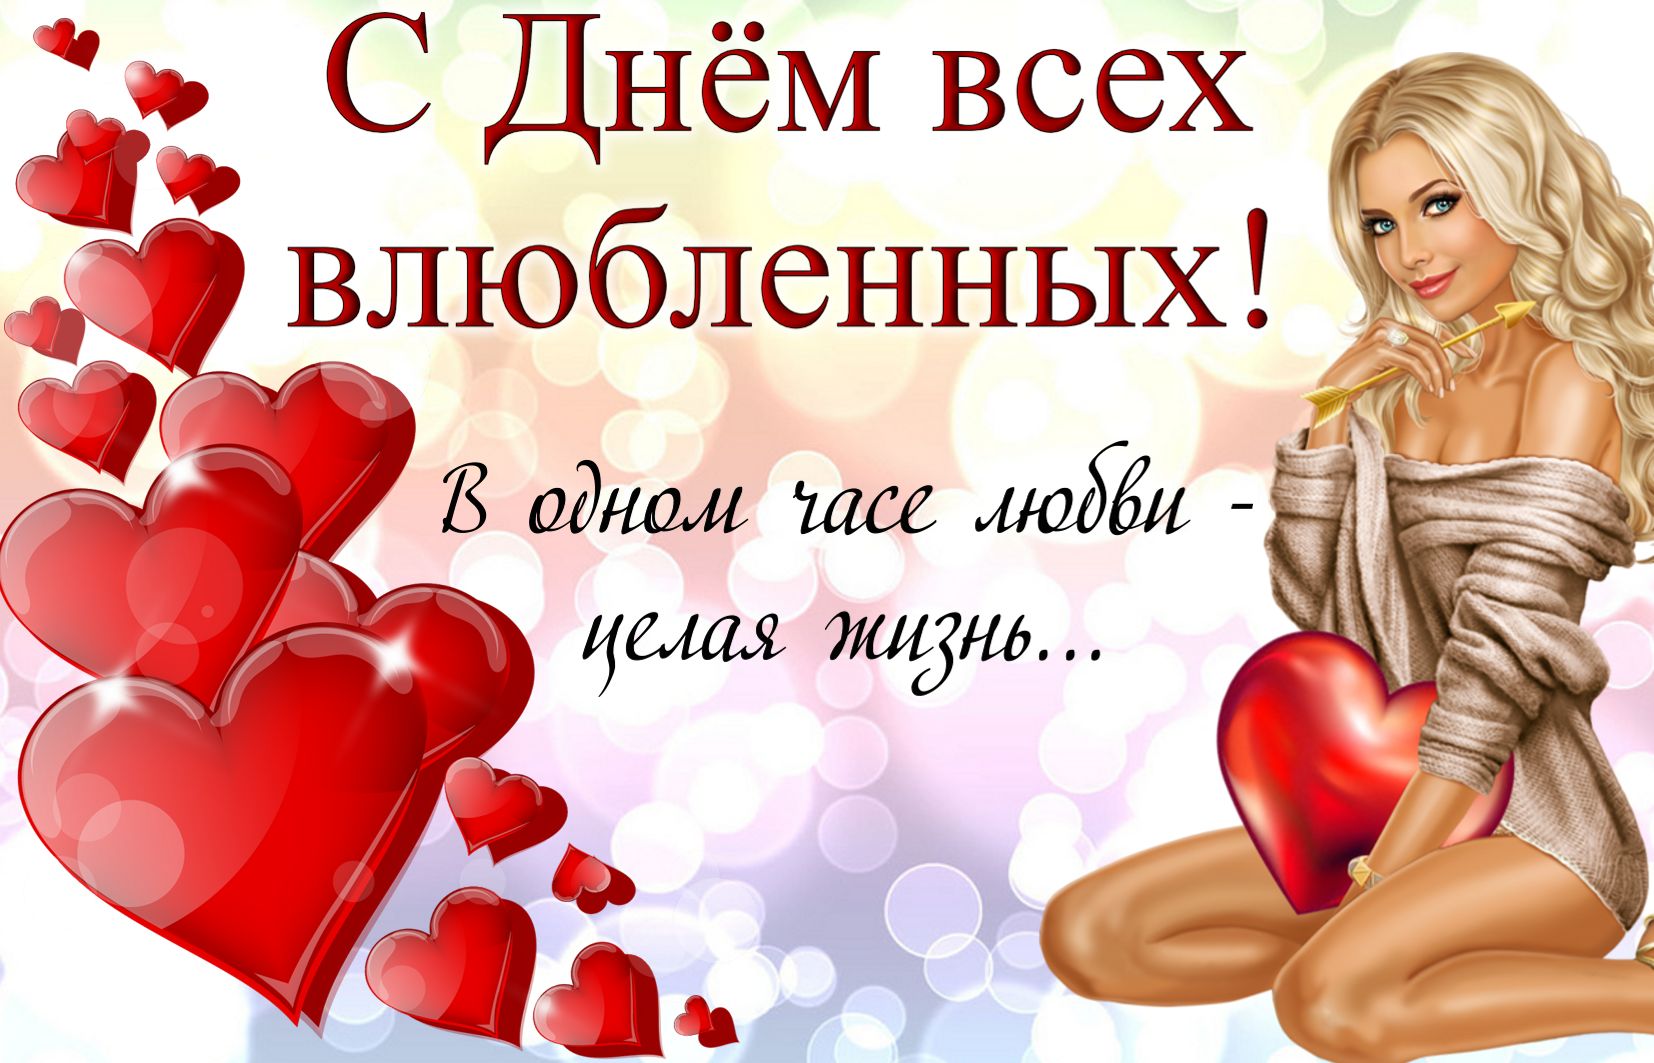 Красивые открытки картинки на день Святого Валентина - праздник всех влюбленных 14 февраля